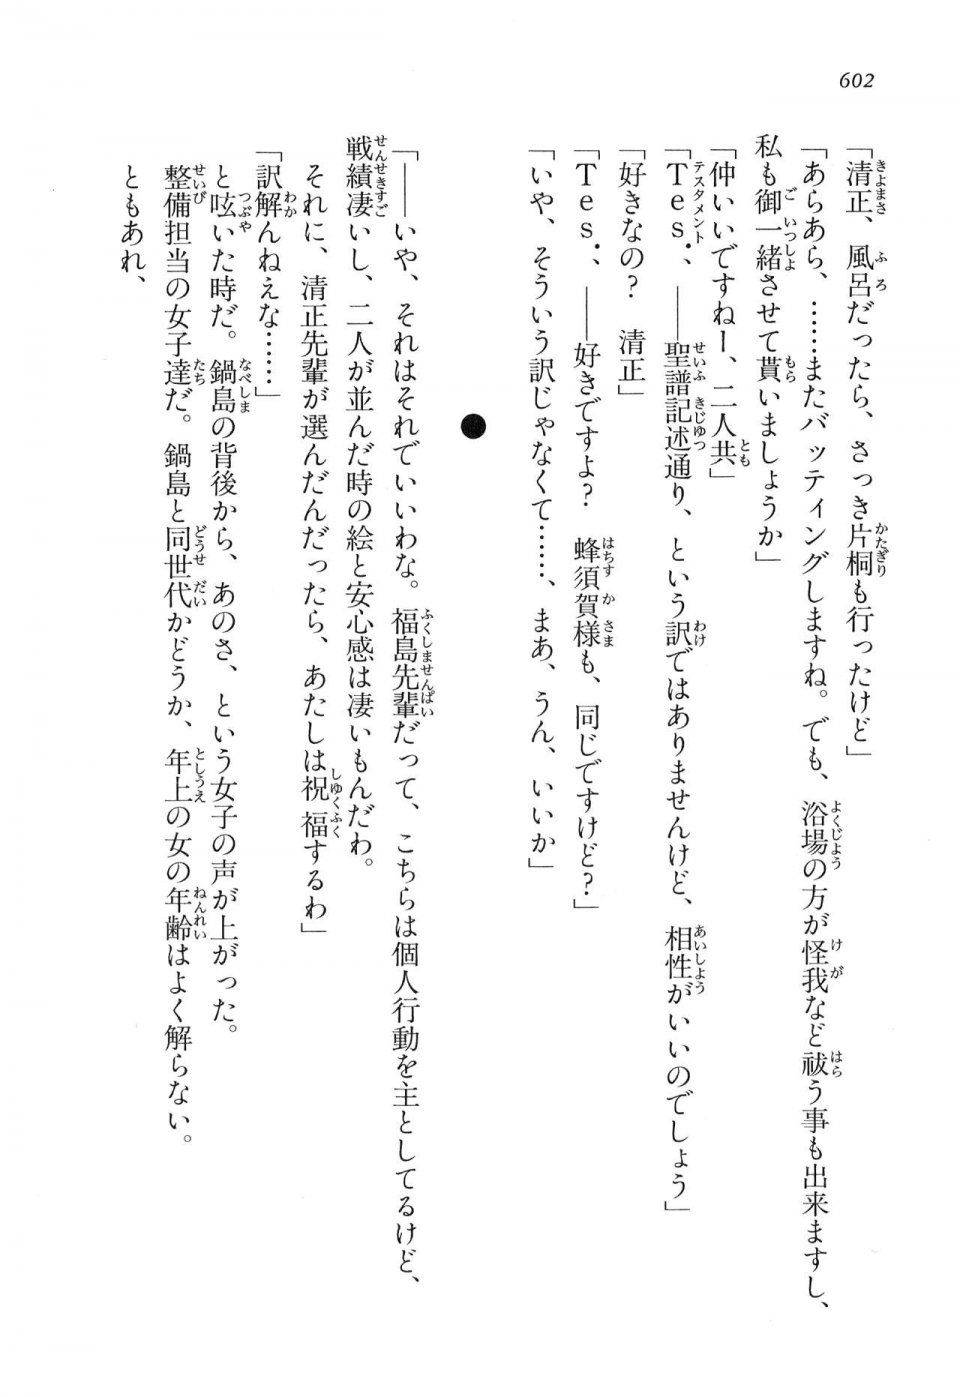 Kyoukai Senjou no Horizon LN Vol 16(7A) - Photo #602